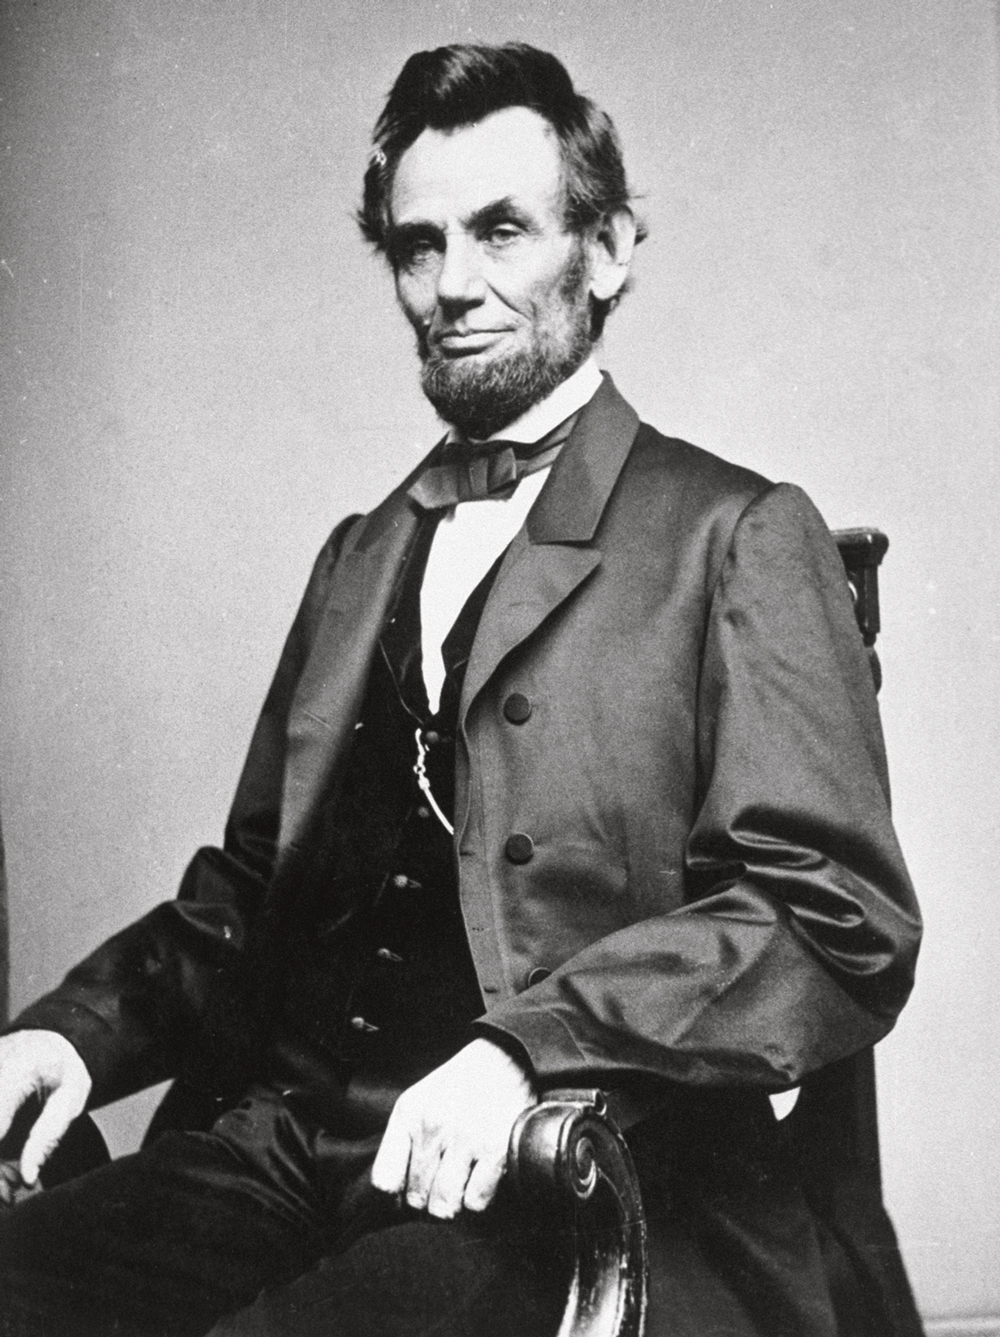 HISTÓRIA - O Lincoln real: primeiro presidente assassinado no país